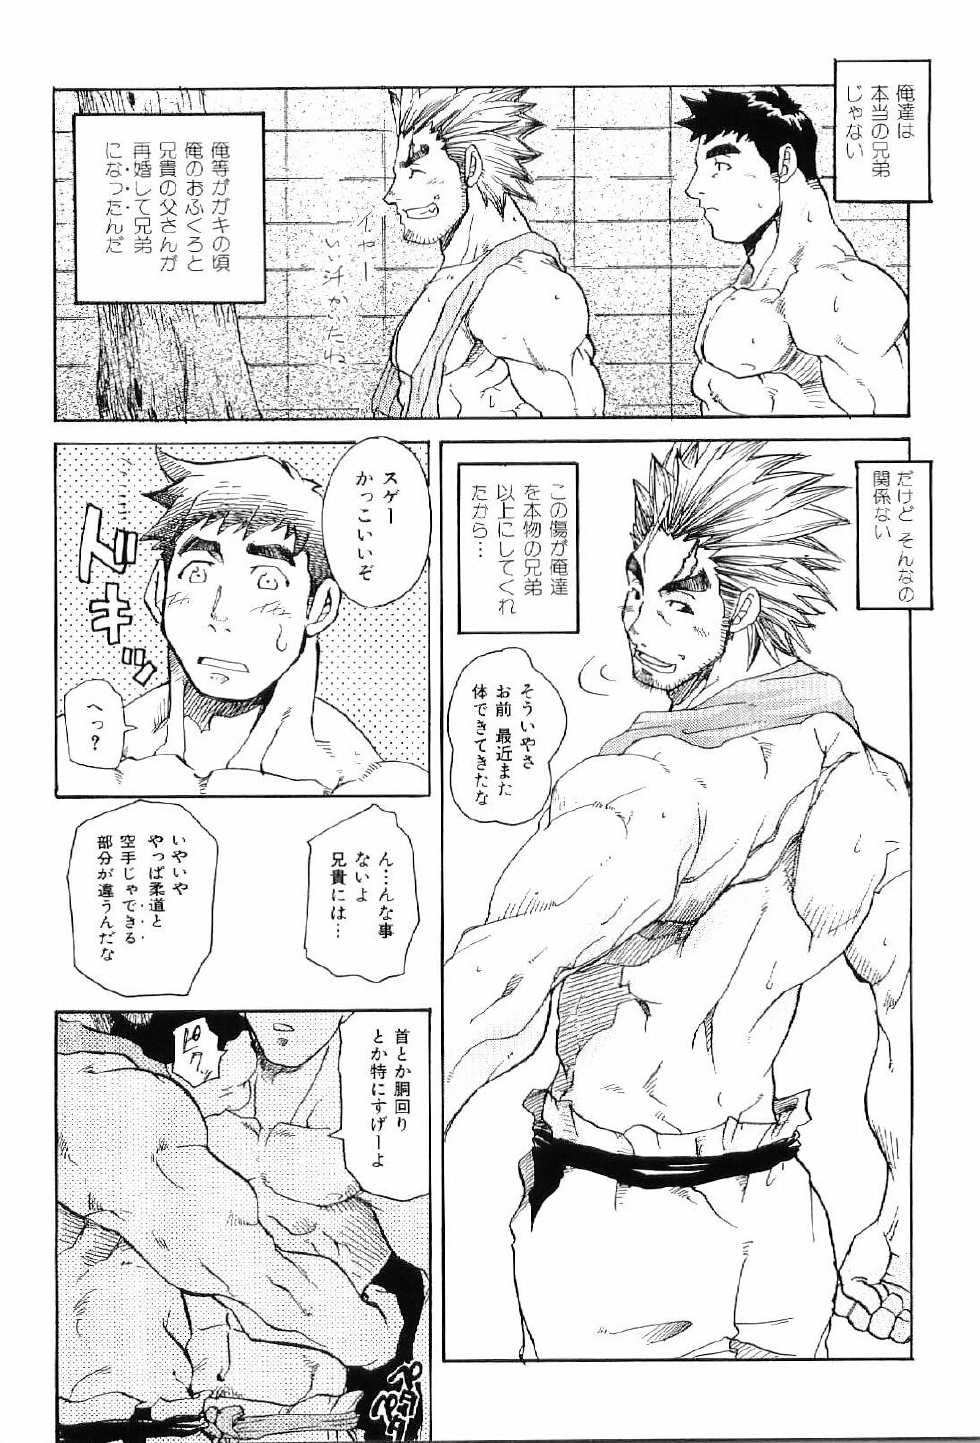 [Anthology] Kinniku Otoko Vol. 4 - Page 16